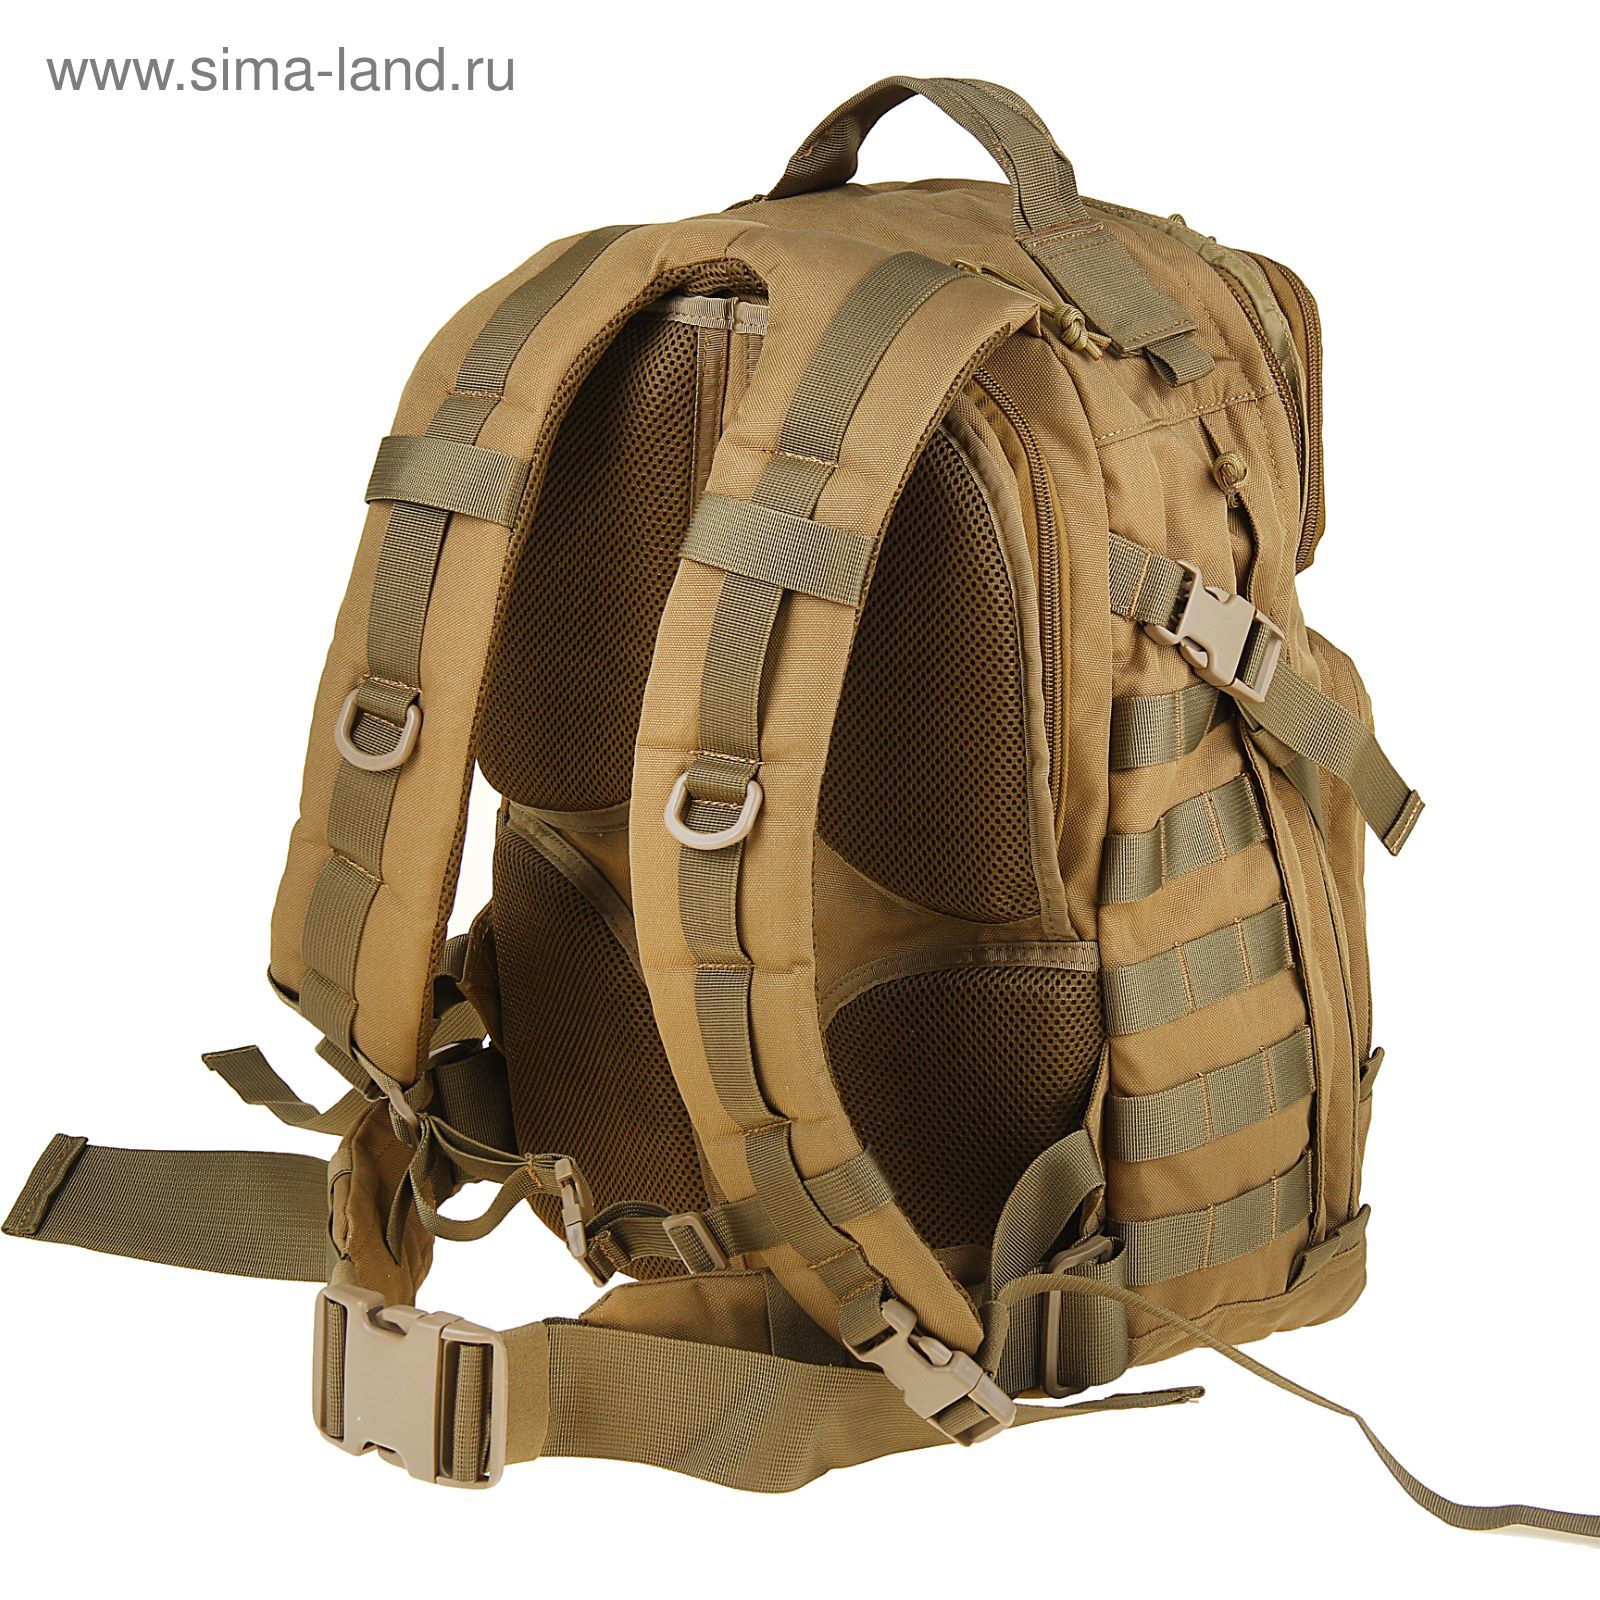 Рюкзак Travel Backpack Tan BP-07-T, 45 л